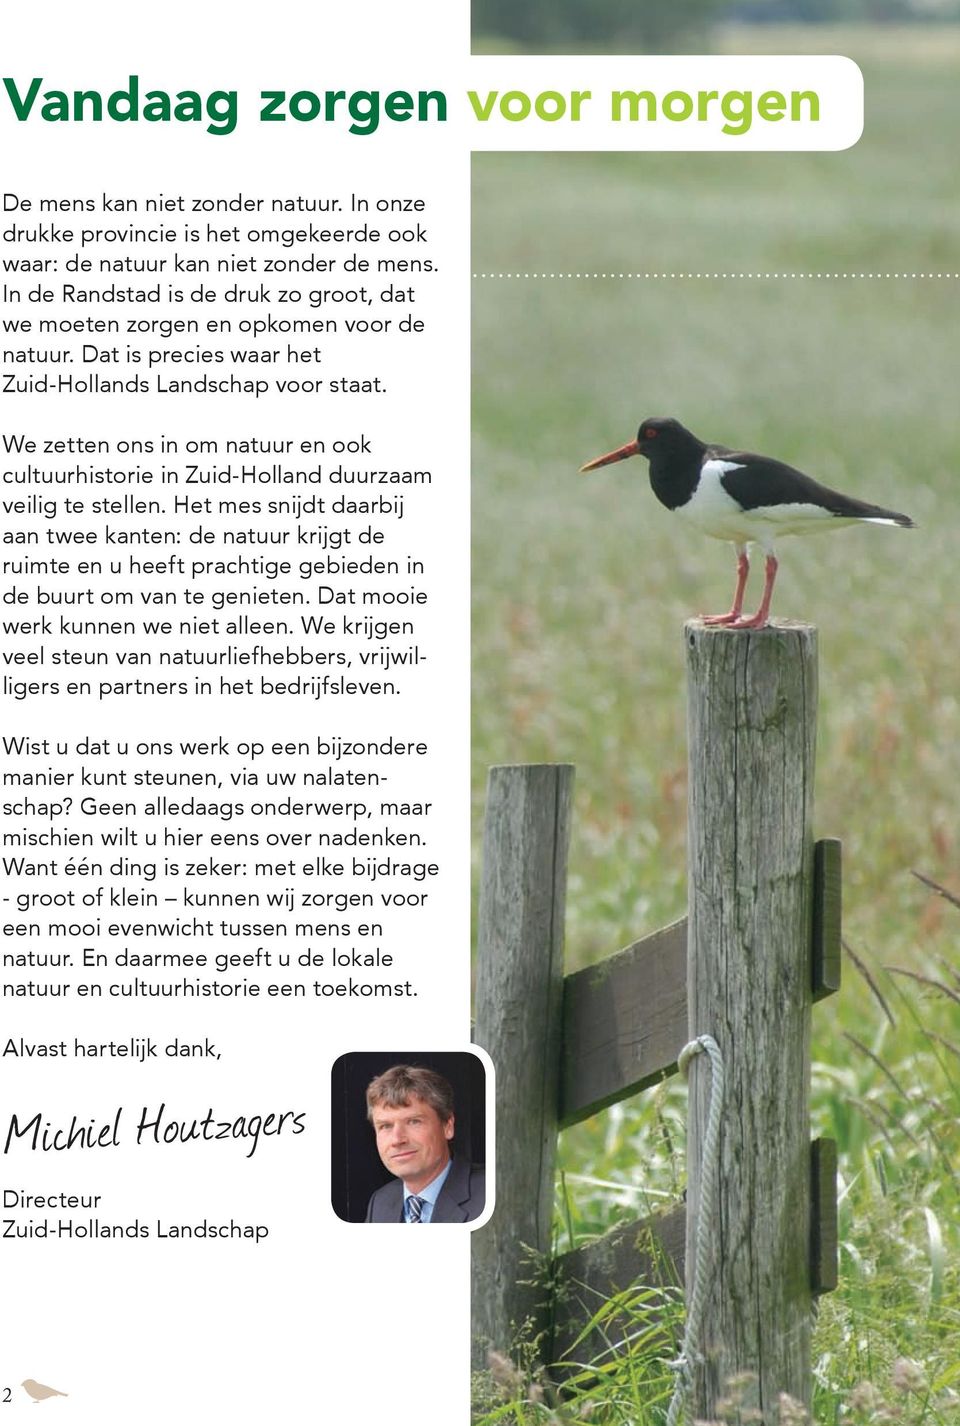 We zetten ons in om natuur en ook cultuurhistorie in Zuid-Holland duurzaam veilig te stellen.